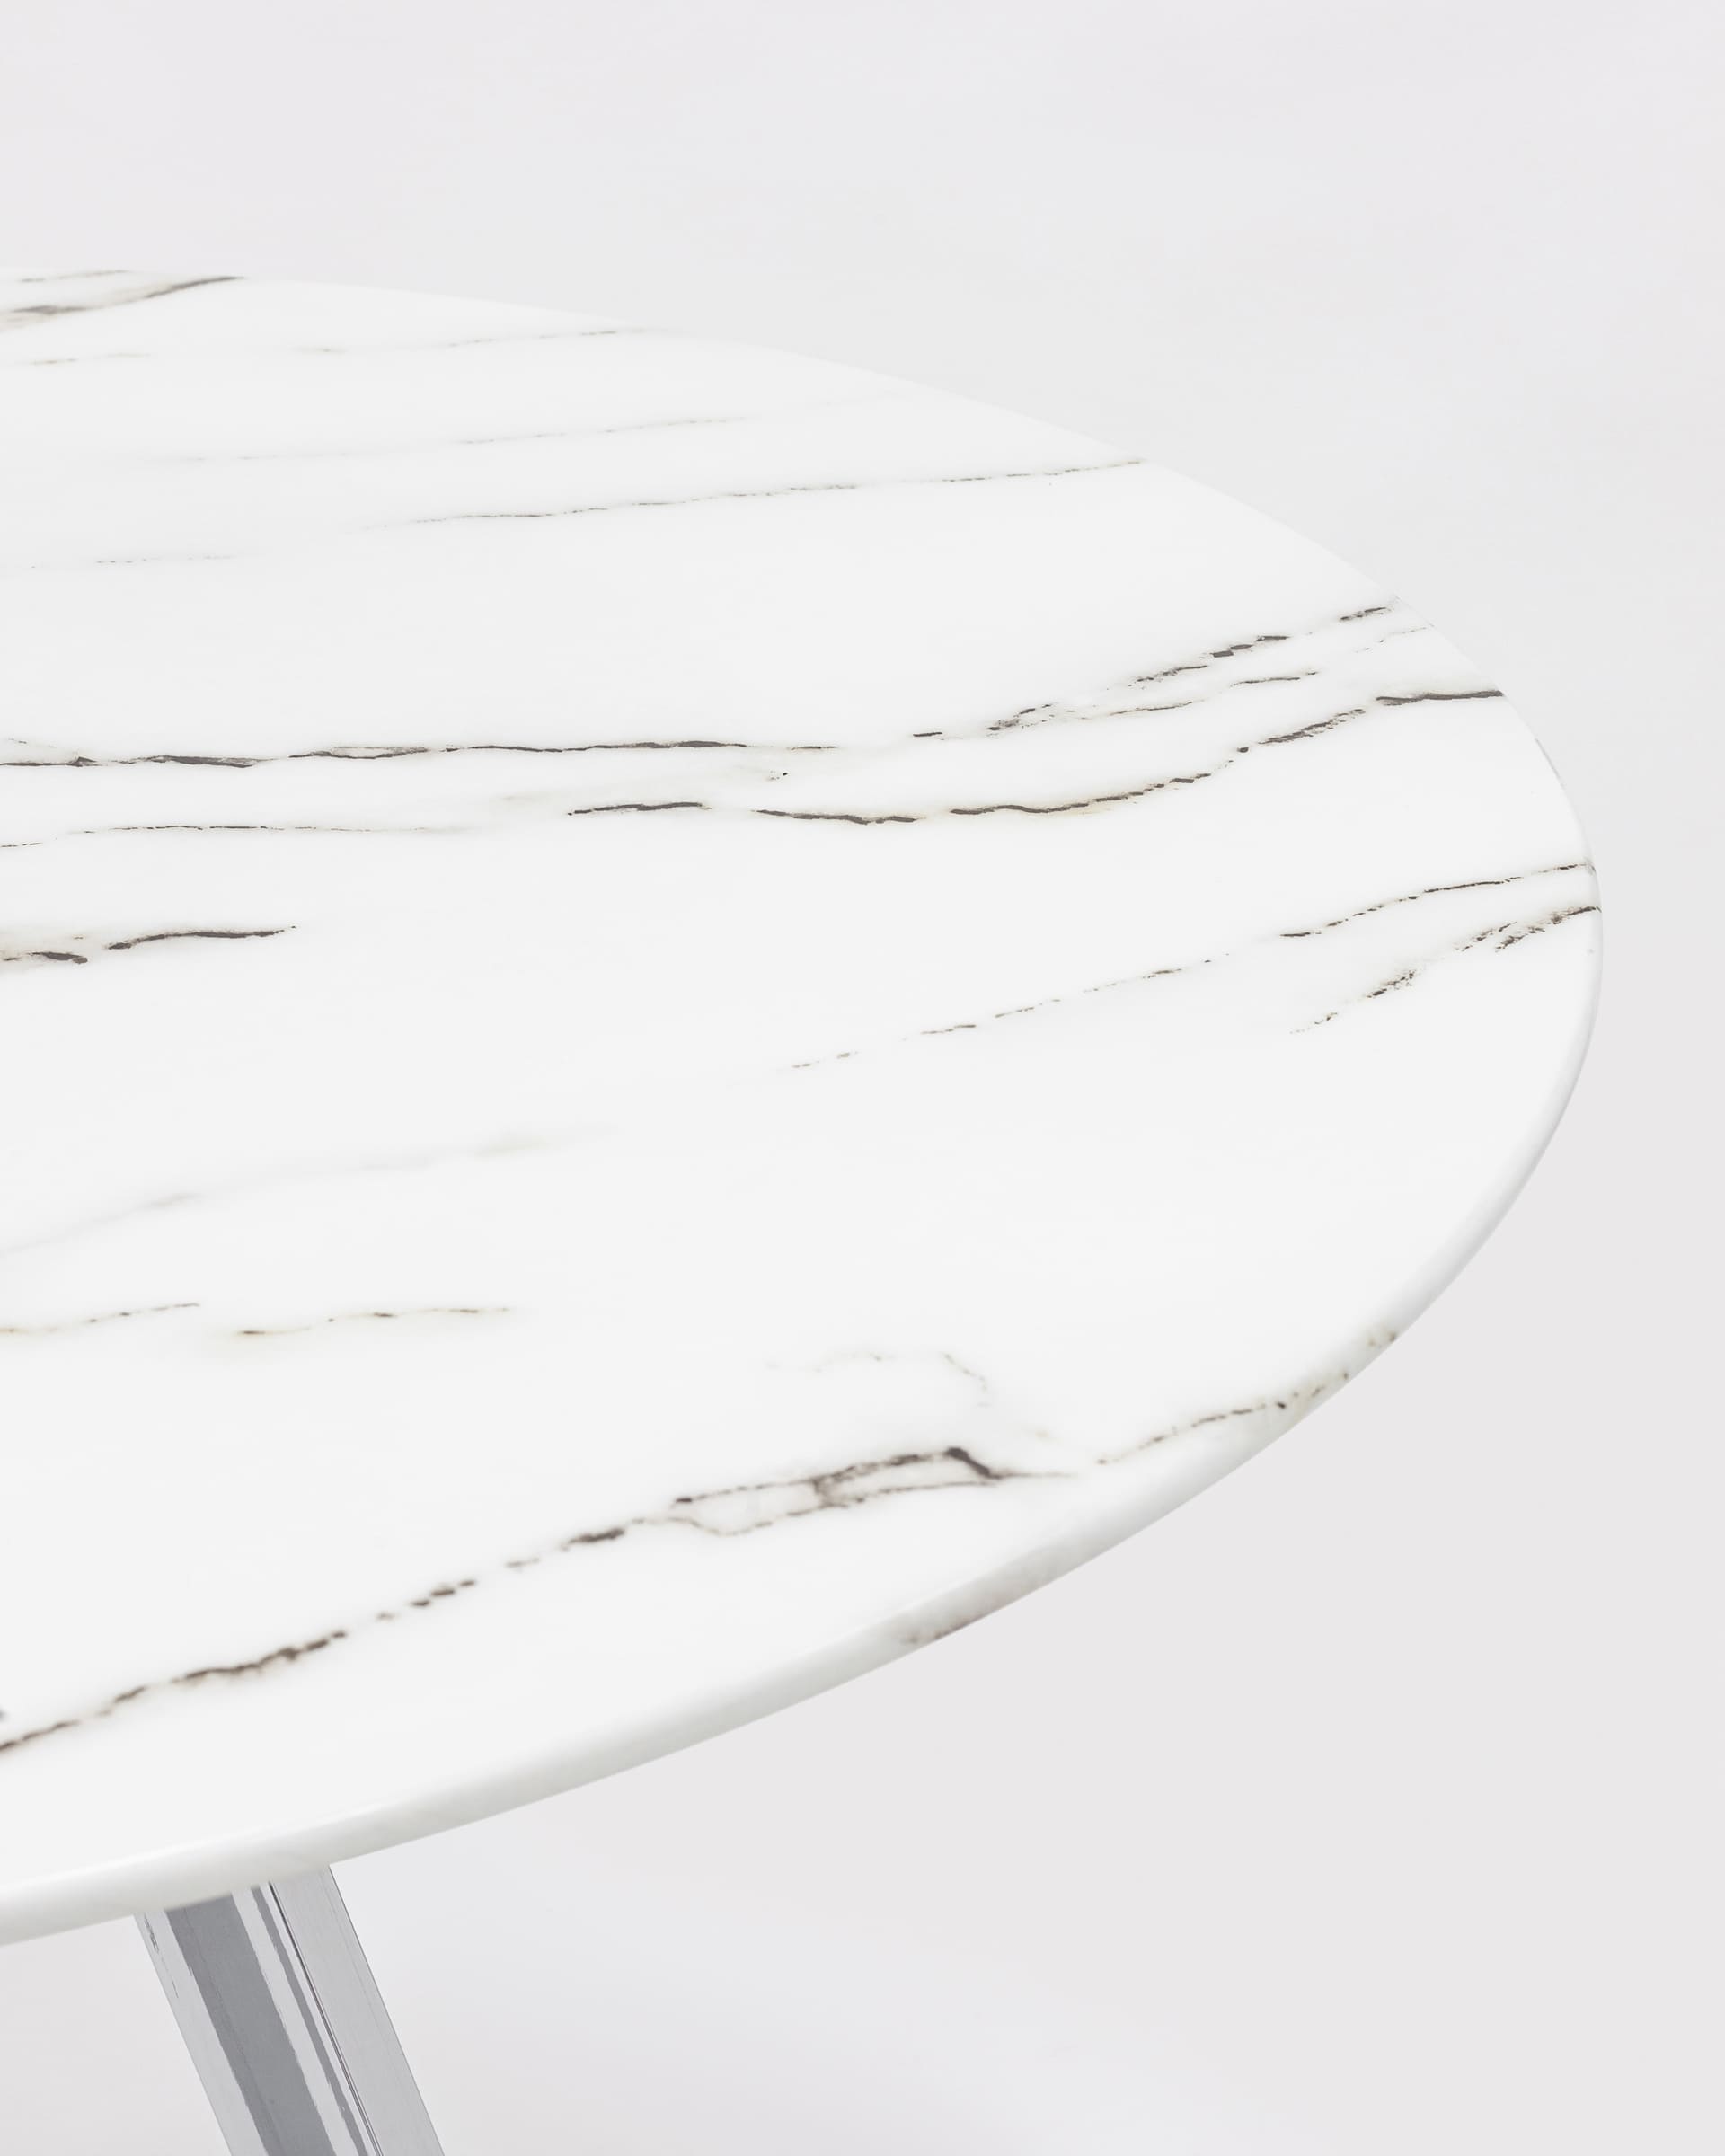 Стол обеденный Хьюстон круглый, стеклянный столешница белая с рисунком под мрамор